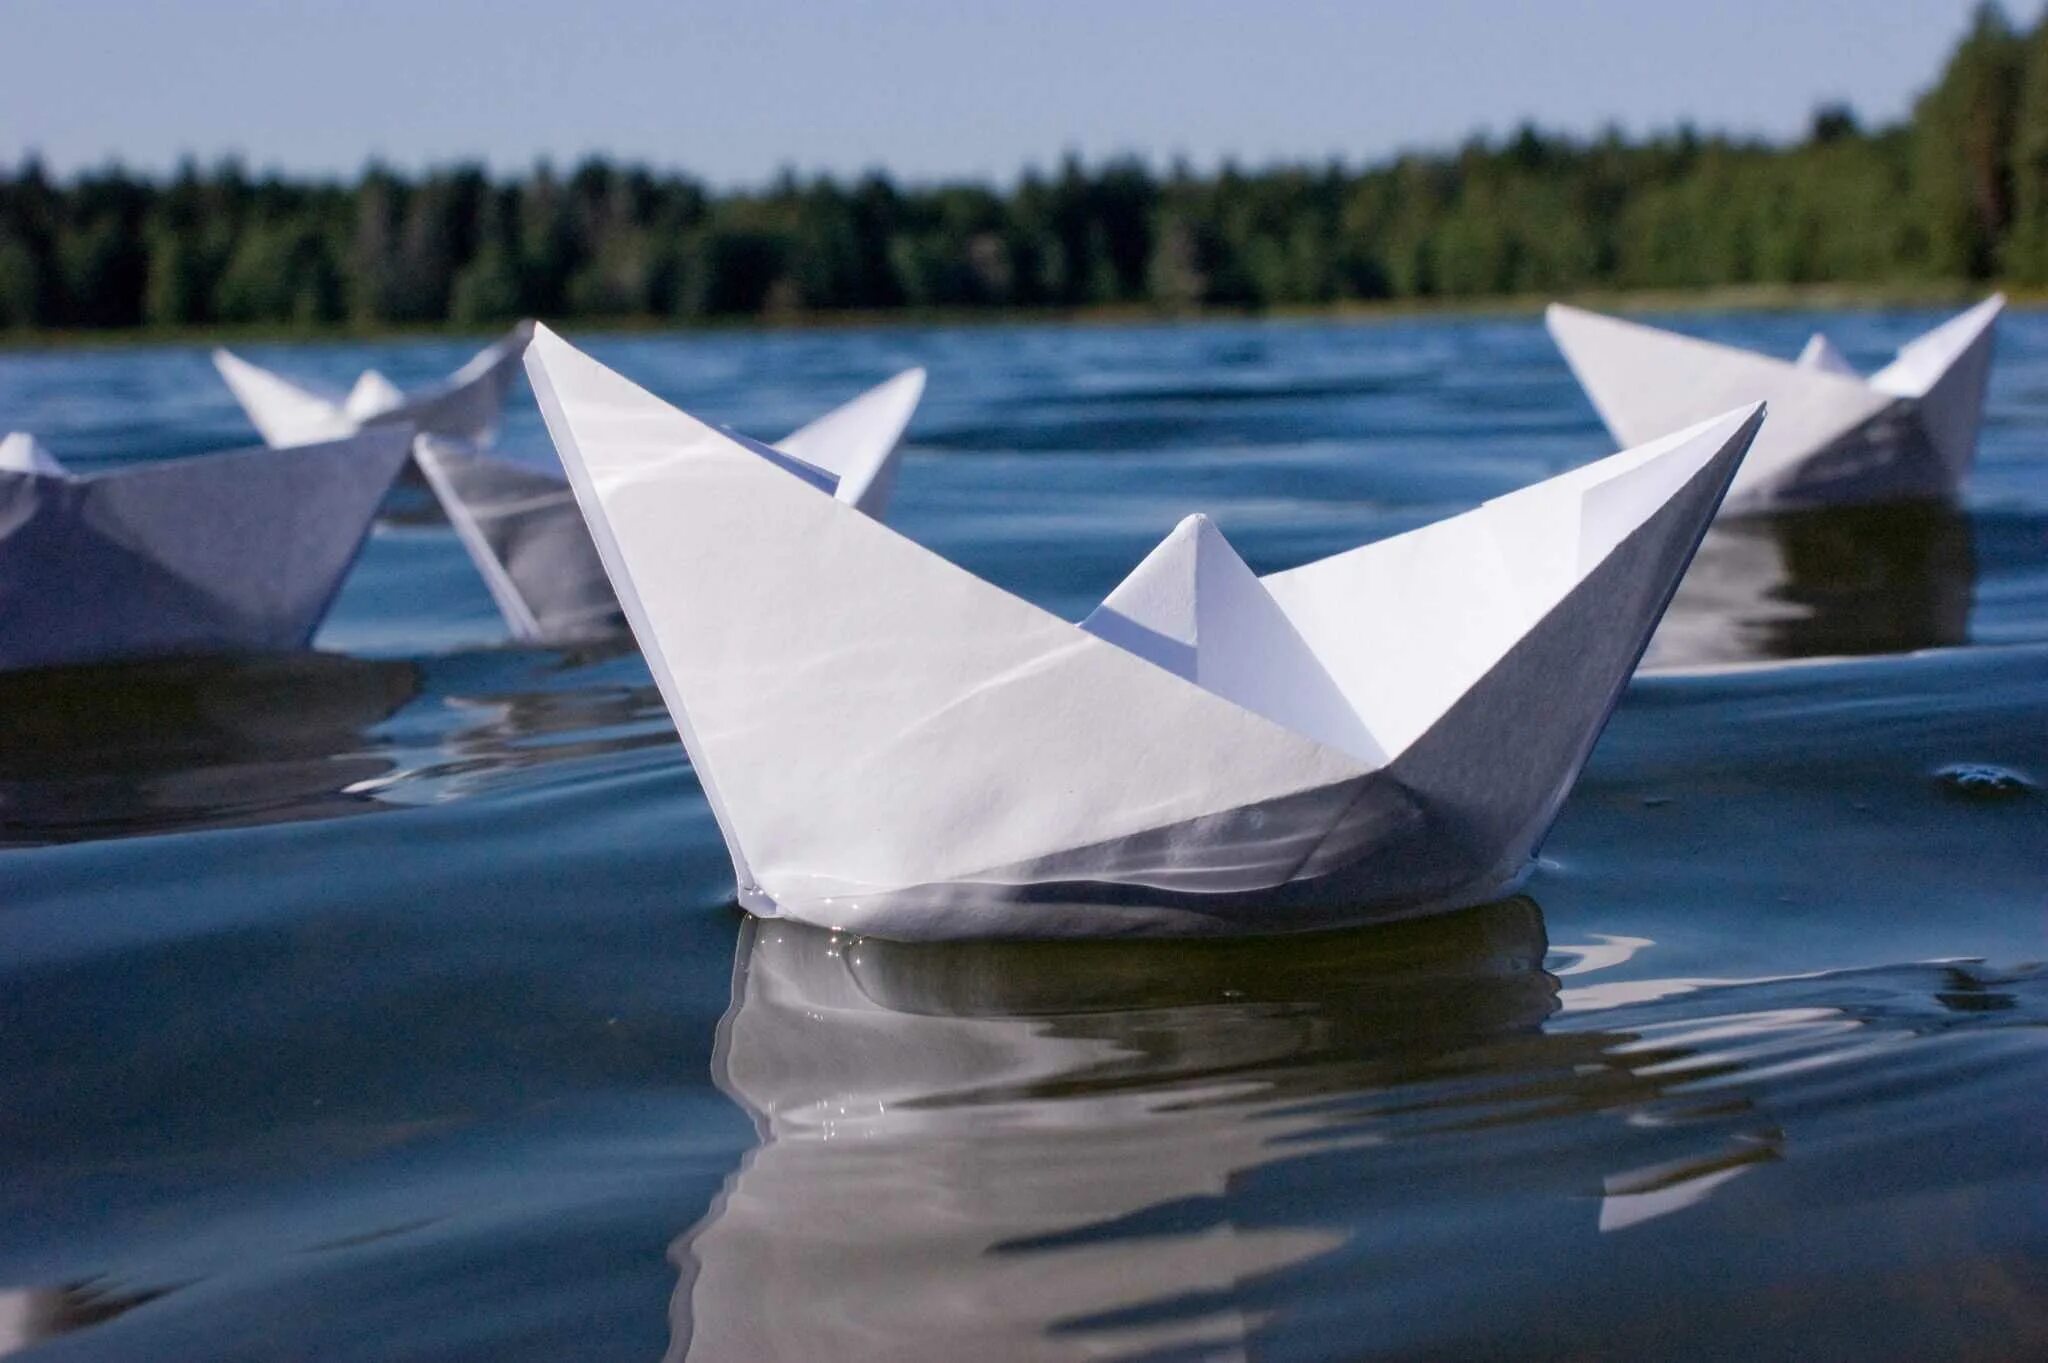 Кораблик из бумаги я по ручью. Бумажный кораблик. Бумажный корабль. Бумажный кораблик на воде. Маленький бумажный кораблик.